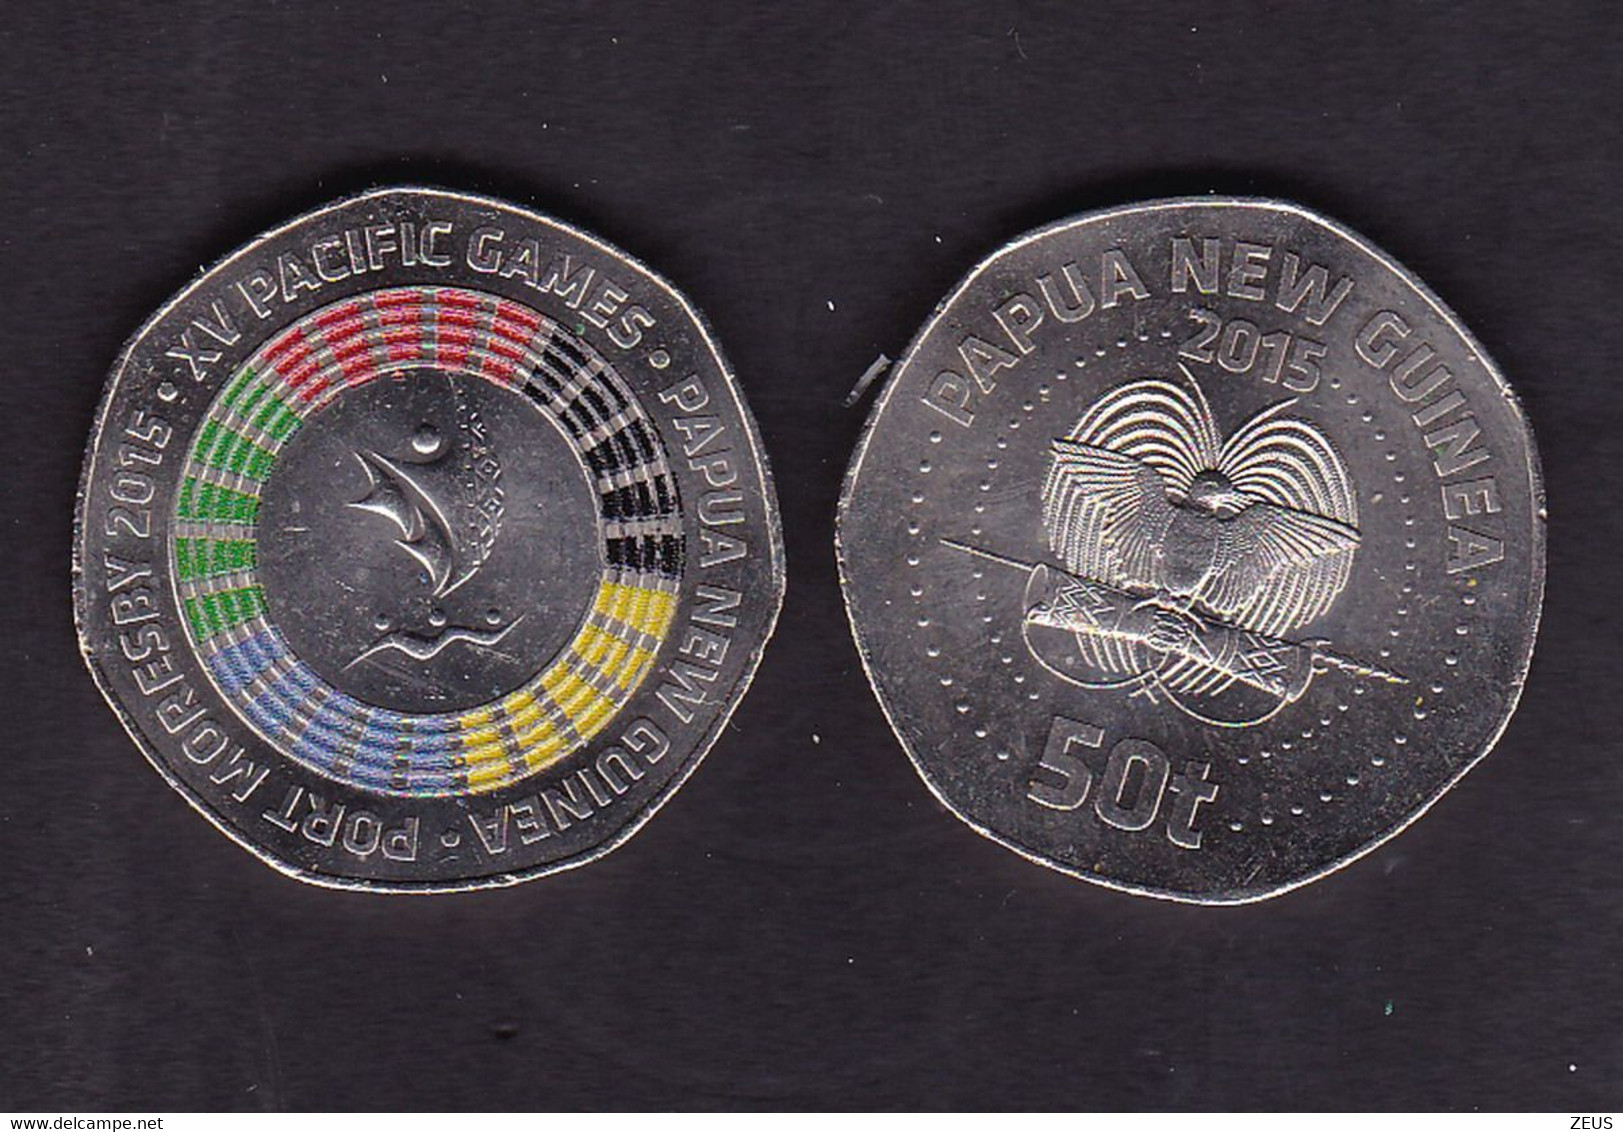 PAPUA NUOVA GUINEA 50 TOEA 2015 FDC - Papúa Nueva Guinea